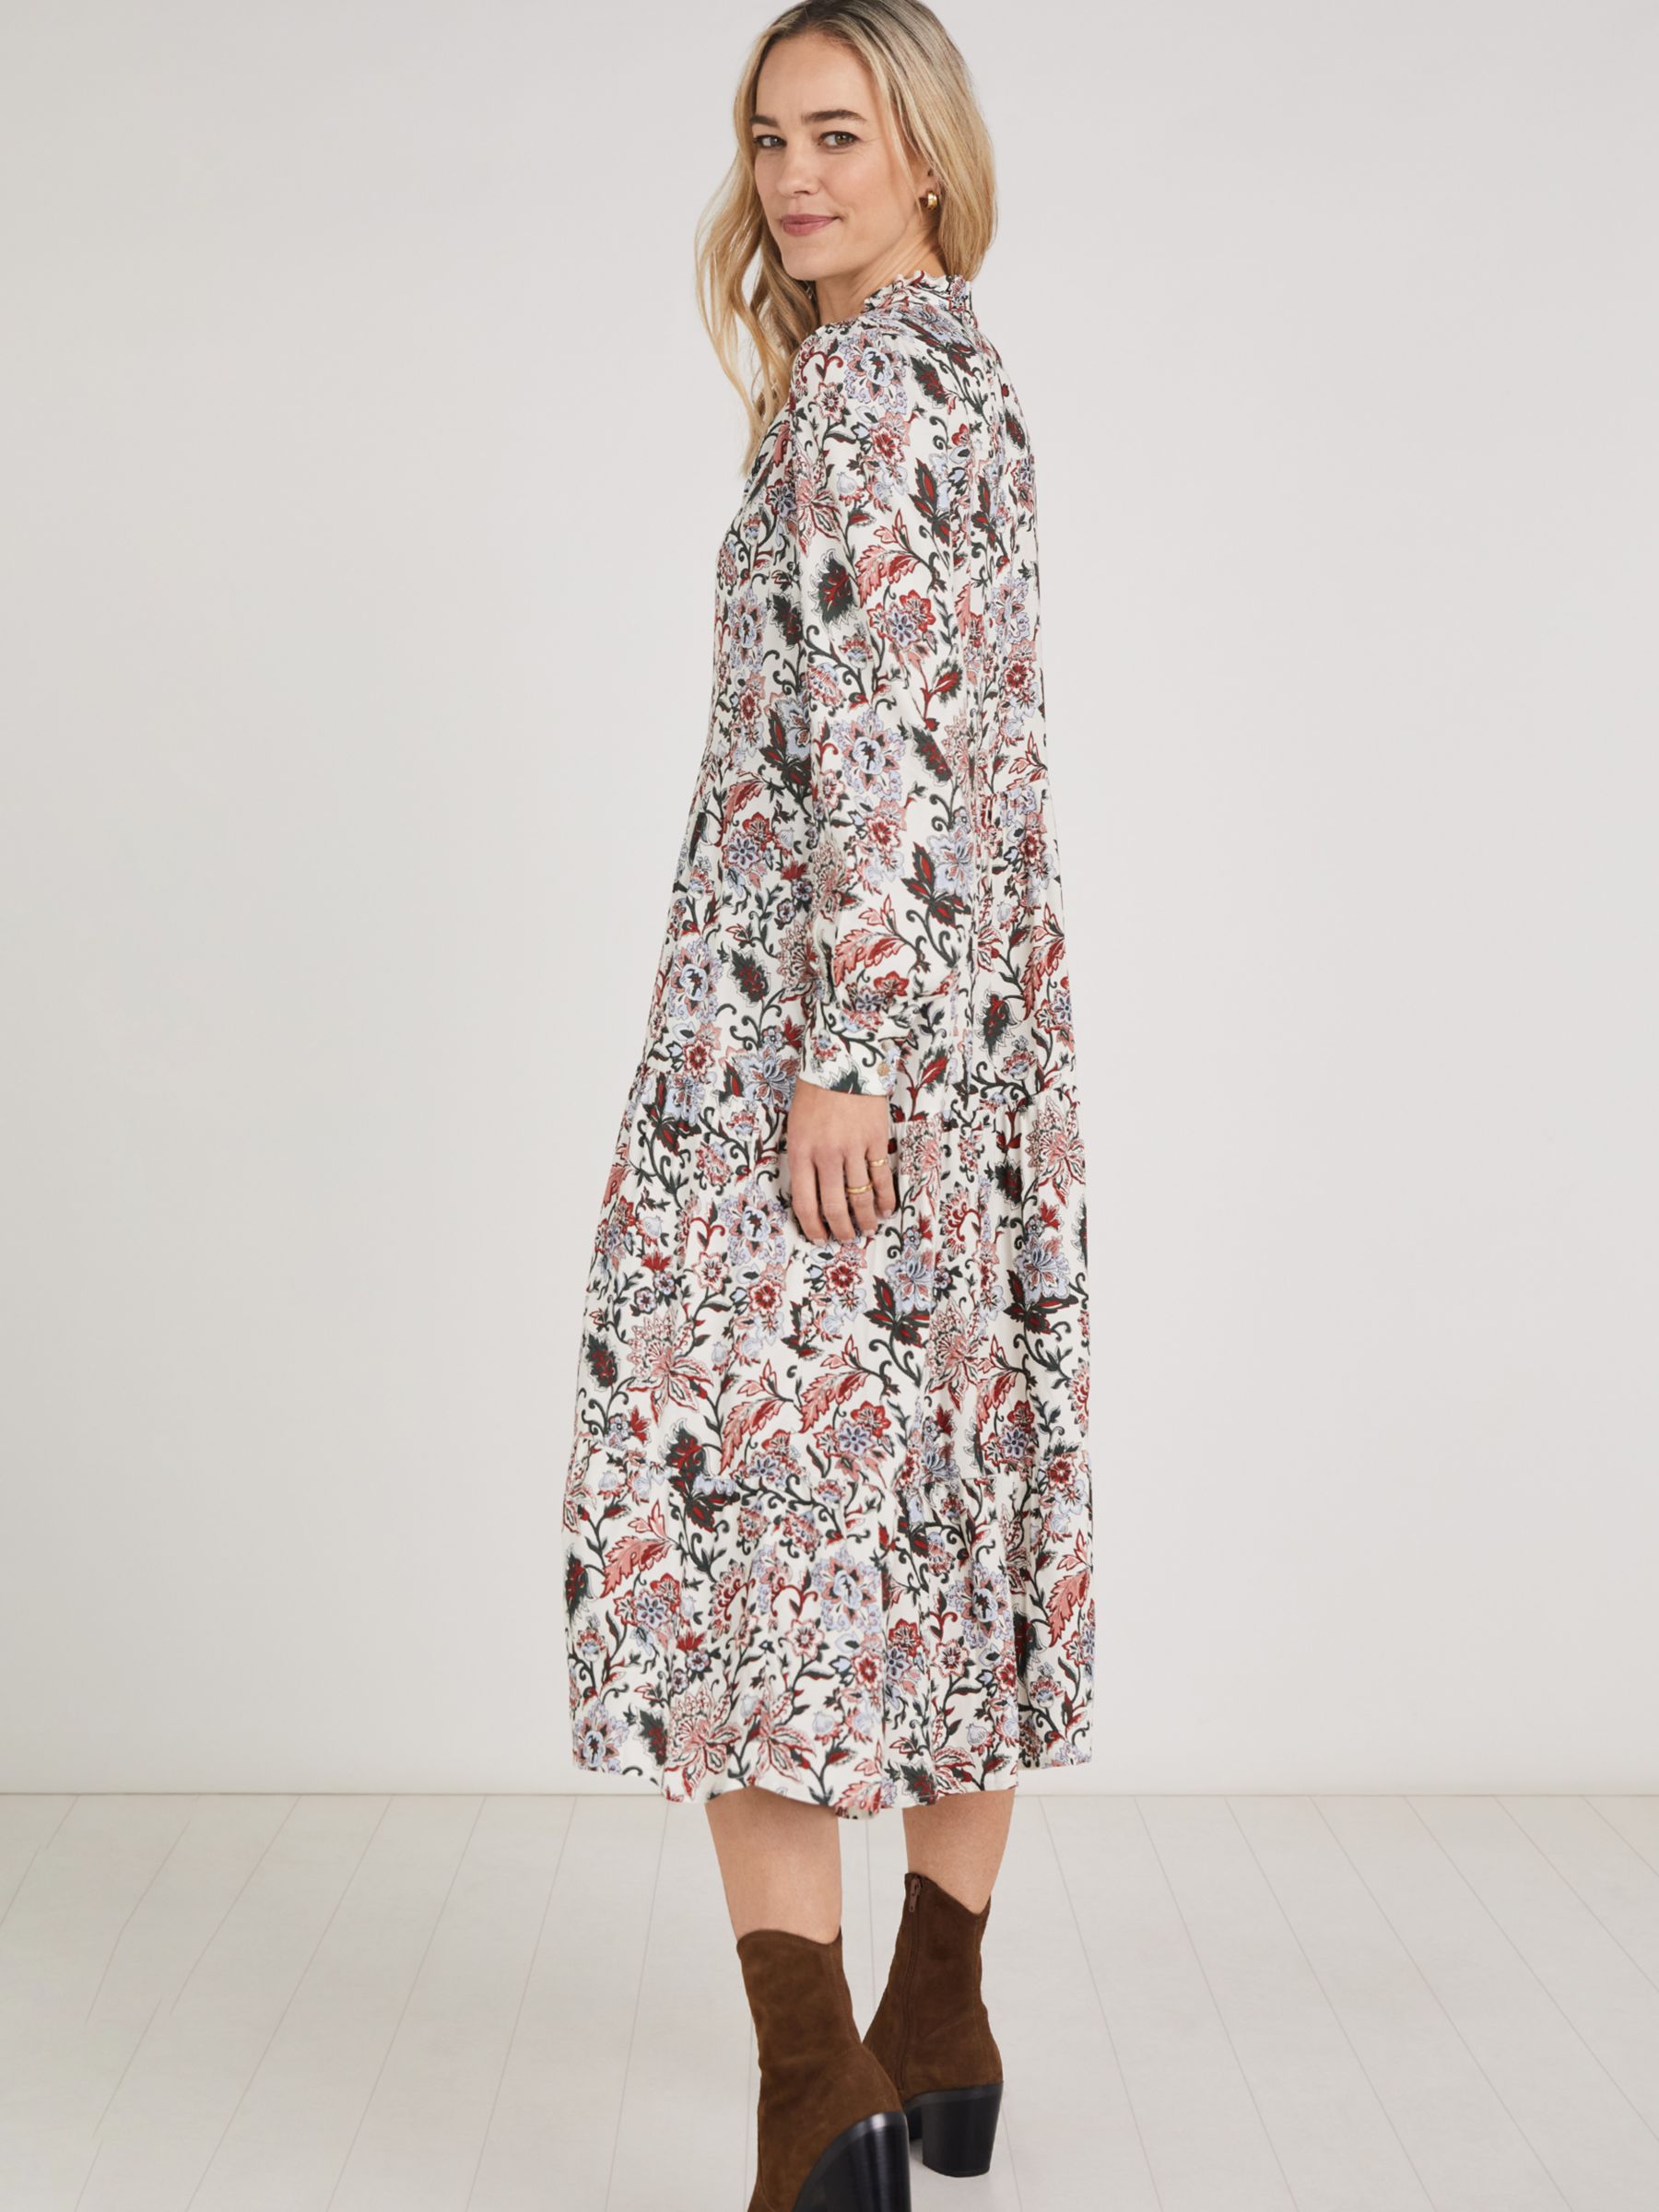 Baukjen Arlette Folk Print Midi Dress, Khaki/Multi at John Lewis & Partners